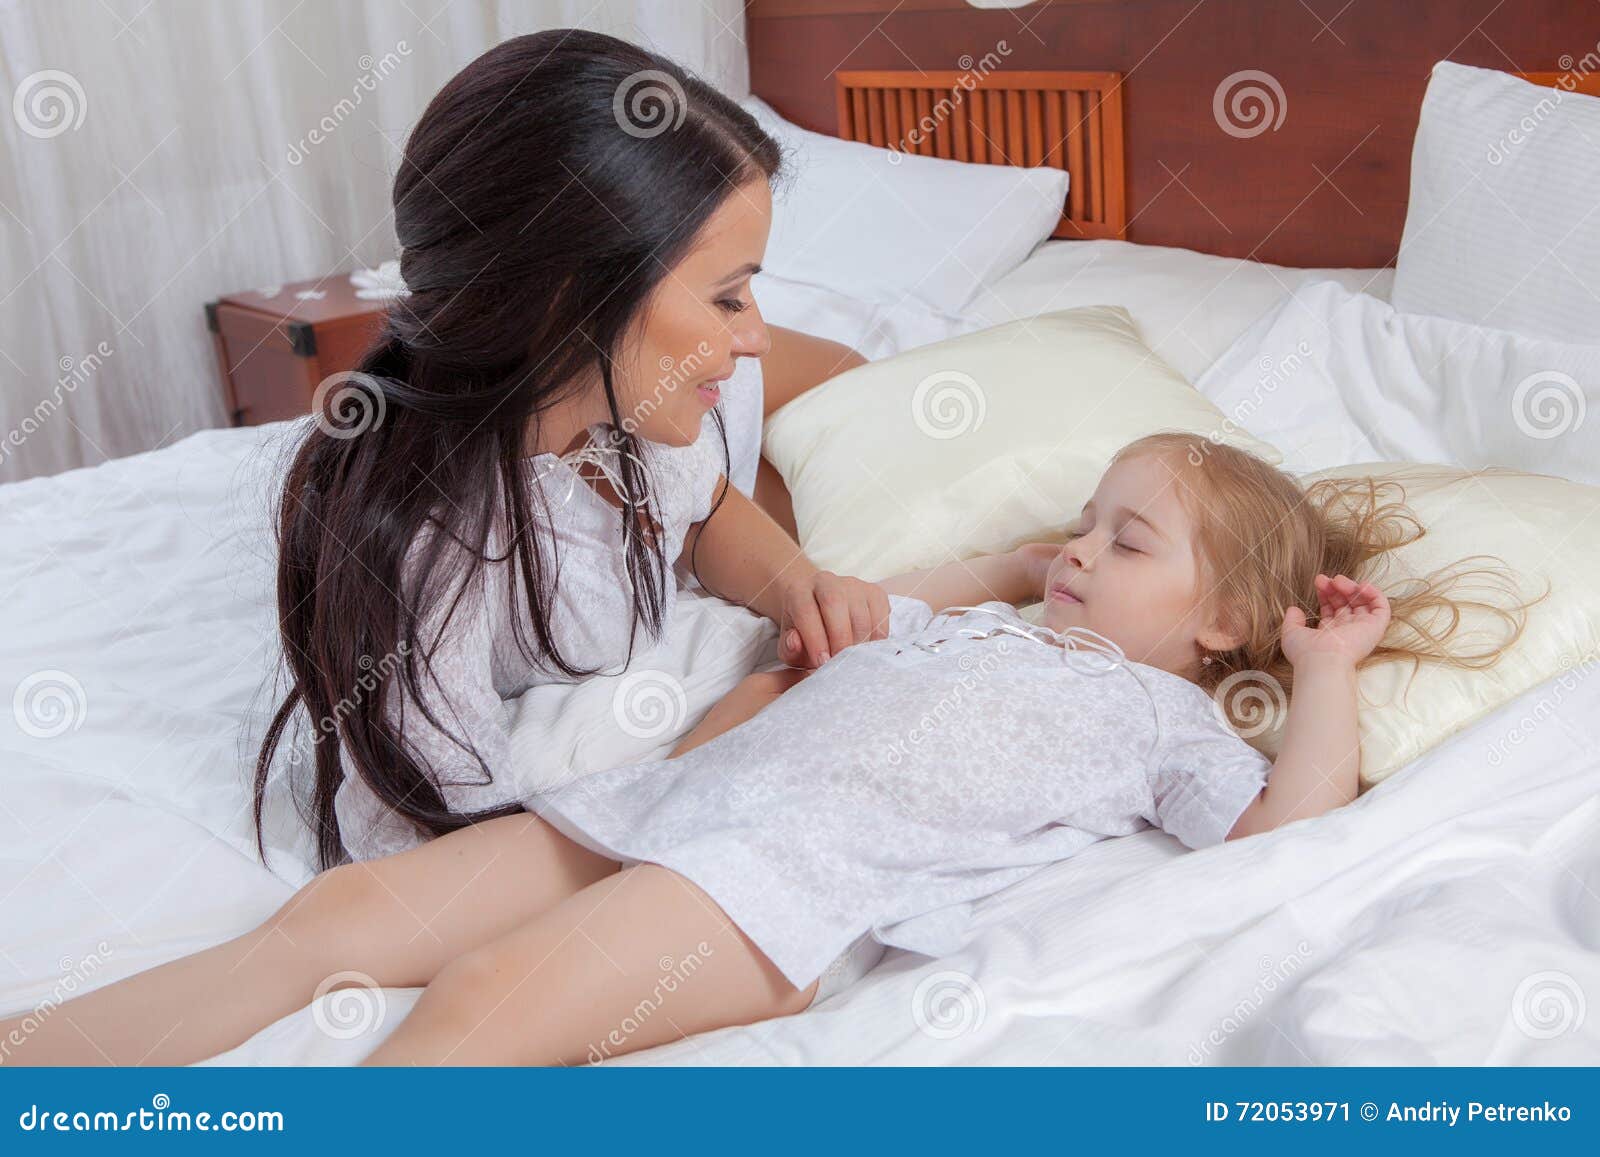 Дочка спал трусы. Мама с дочкой на кровати. Мамас дочкой накрлвати. Фотосессия с дочкой на кровати. Девочка и мама в постели -.